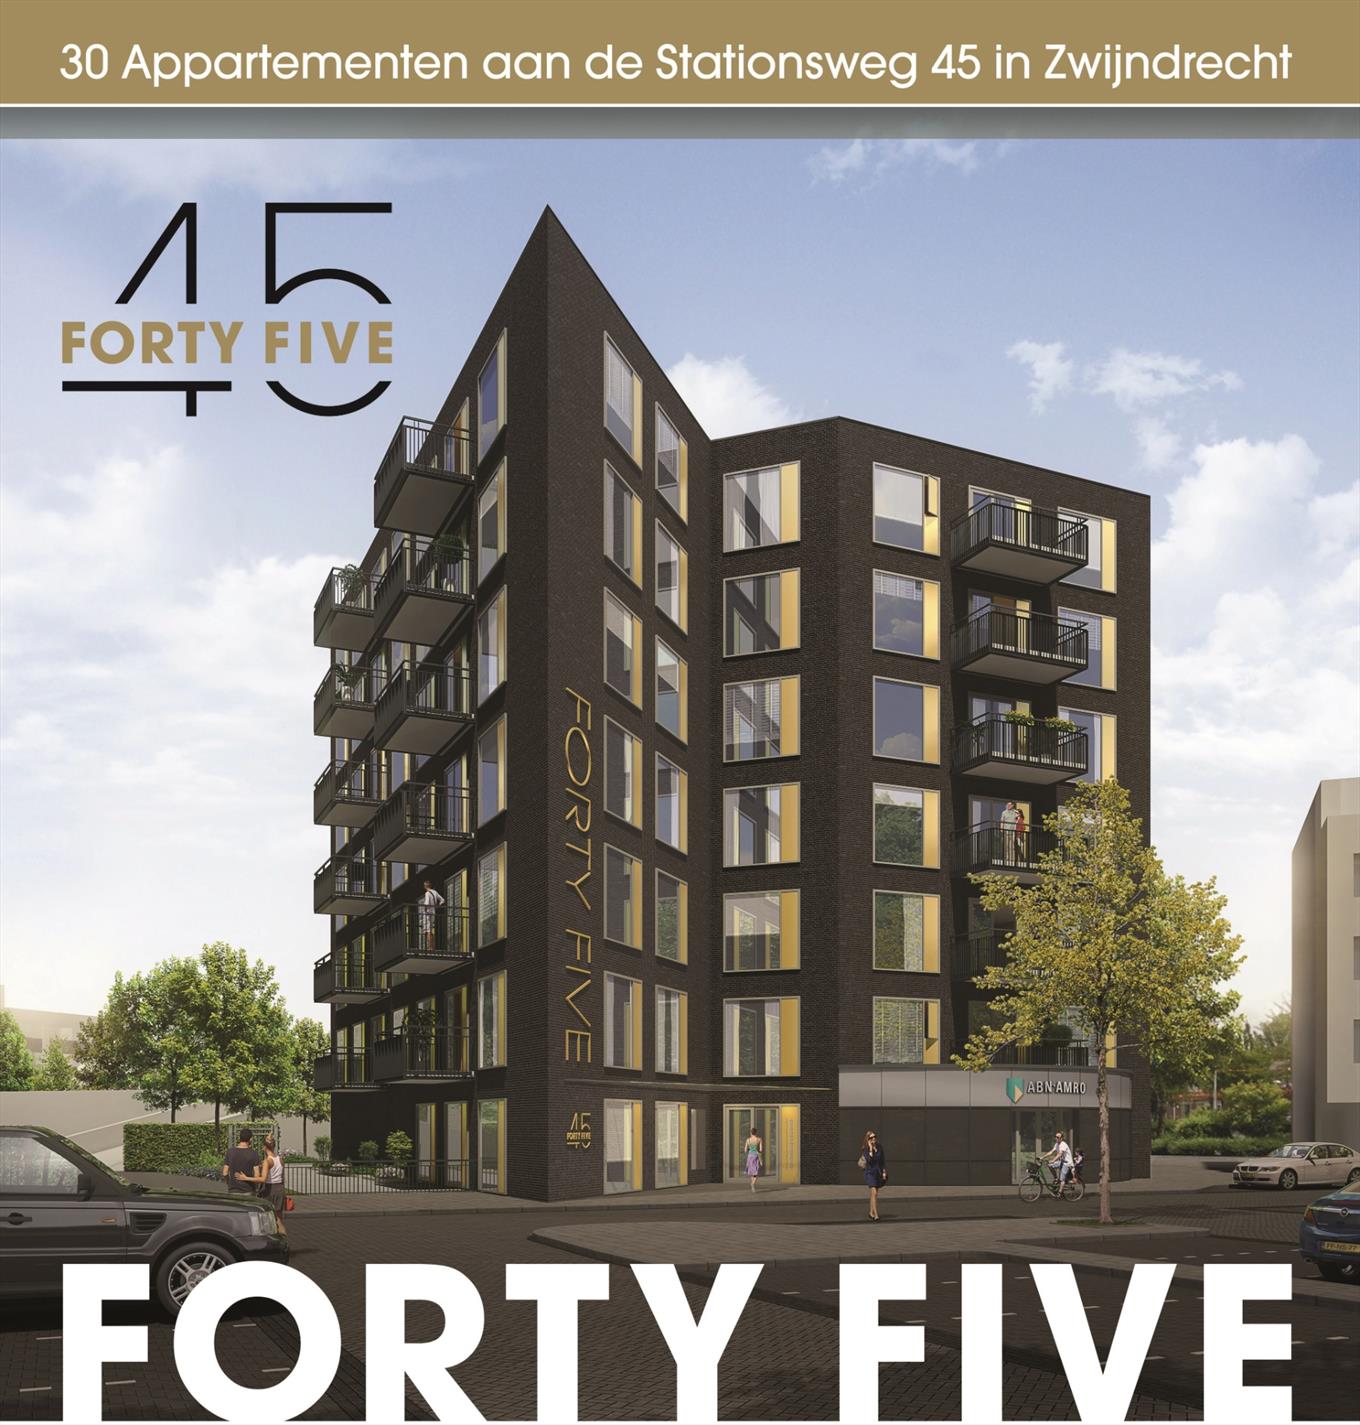 De transformatie van dit voormalige kantoorpand naar 30 appartementen is uniek voor de gemeente Zwijndrecht en inmiddels gestart. 